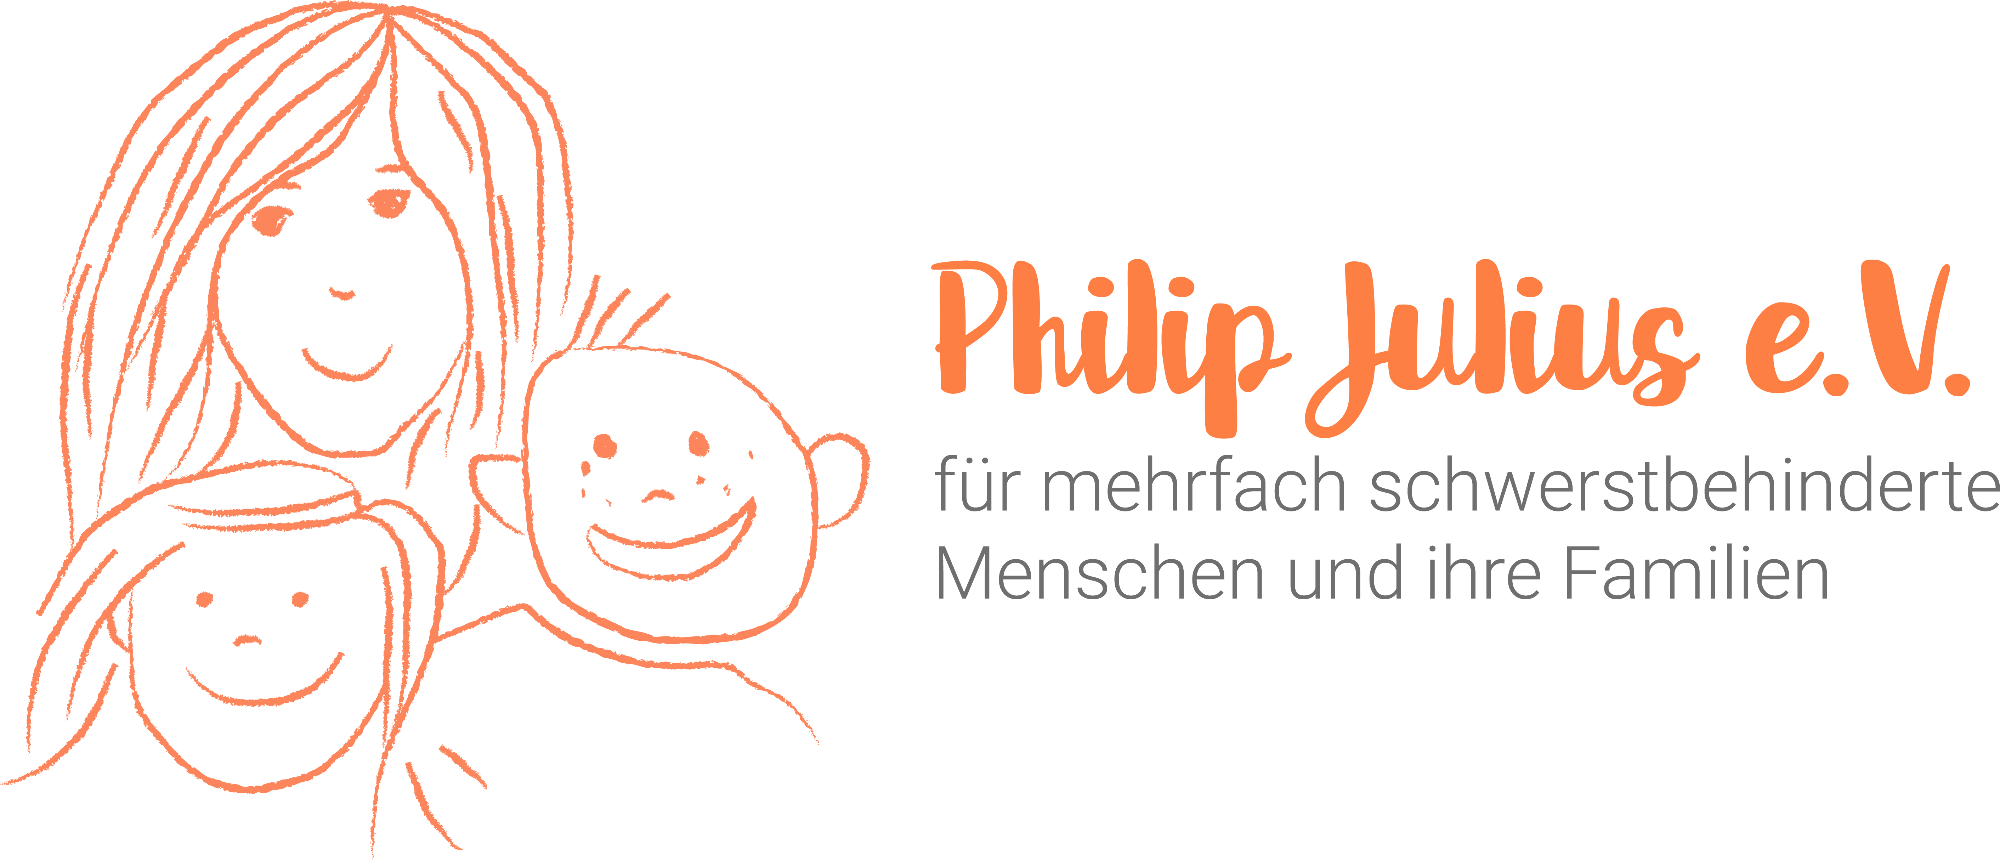 Verein Philip-Julius e.V.